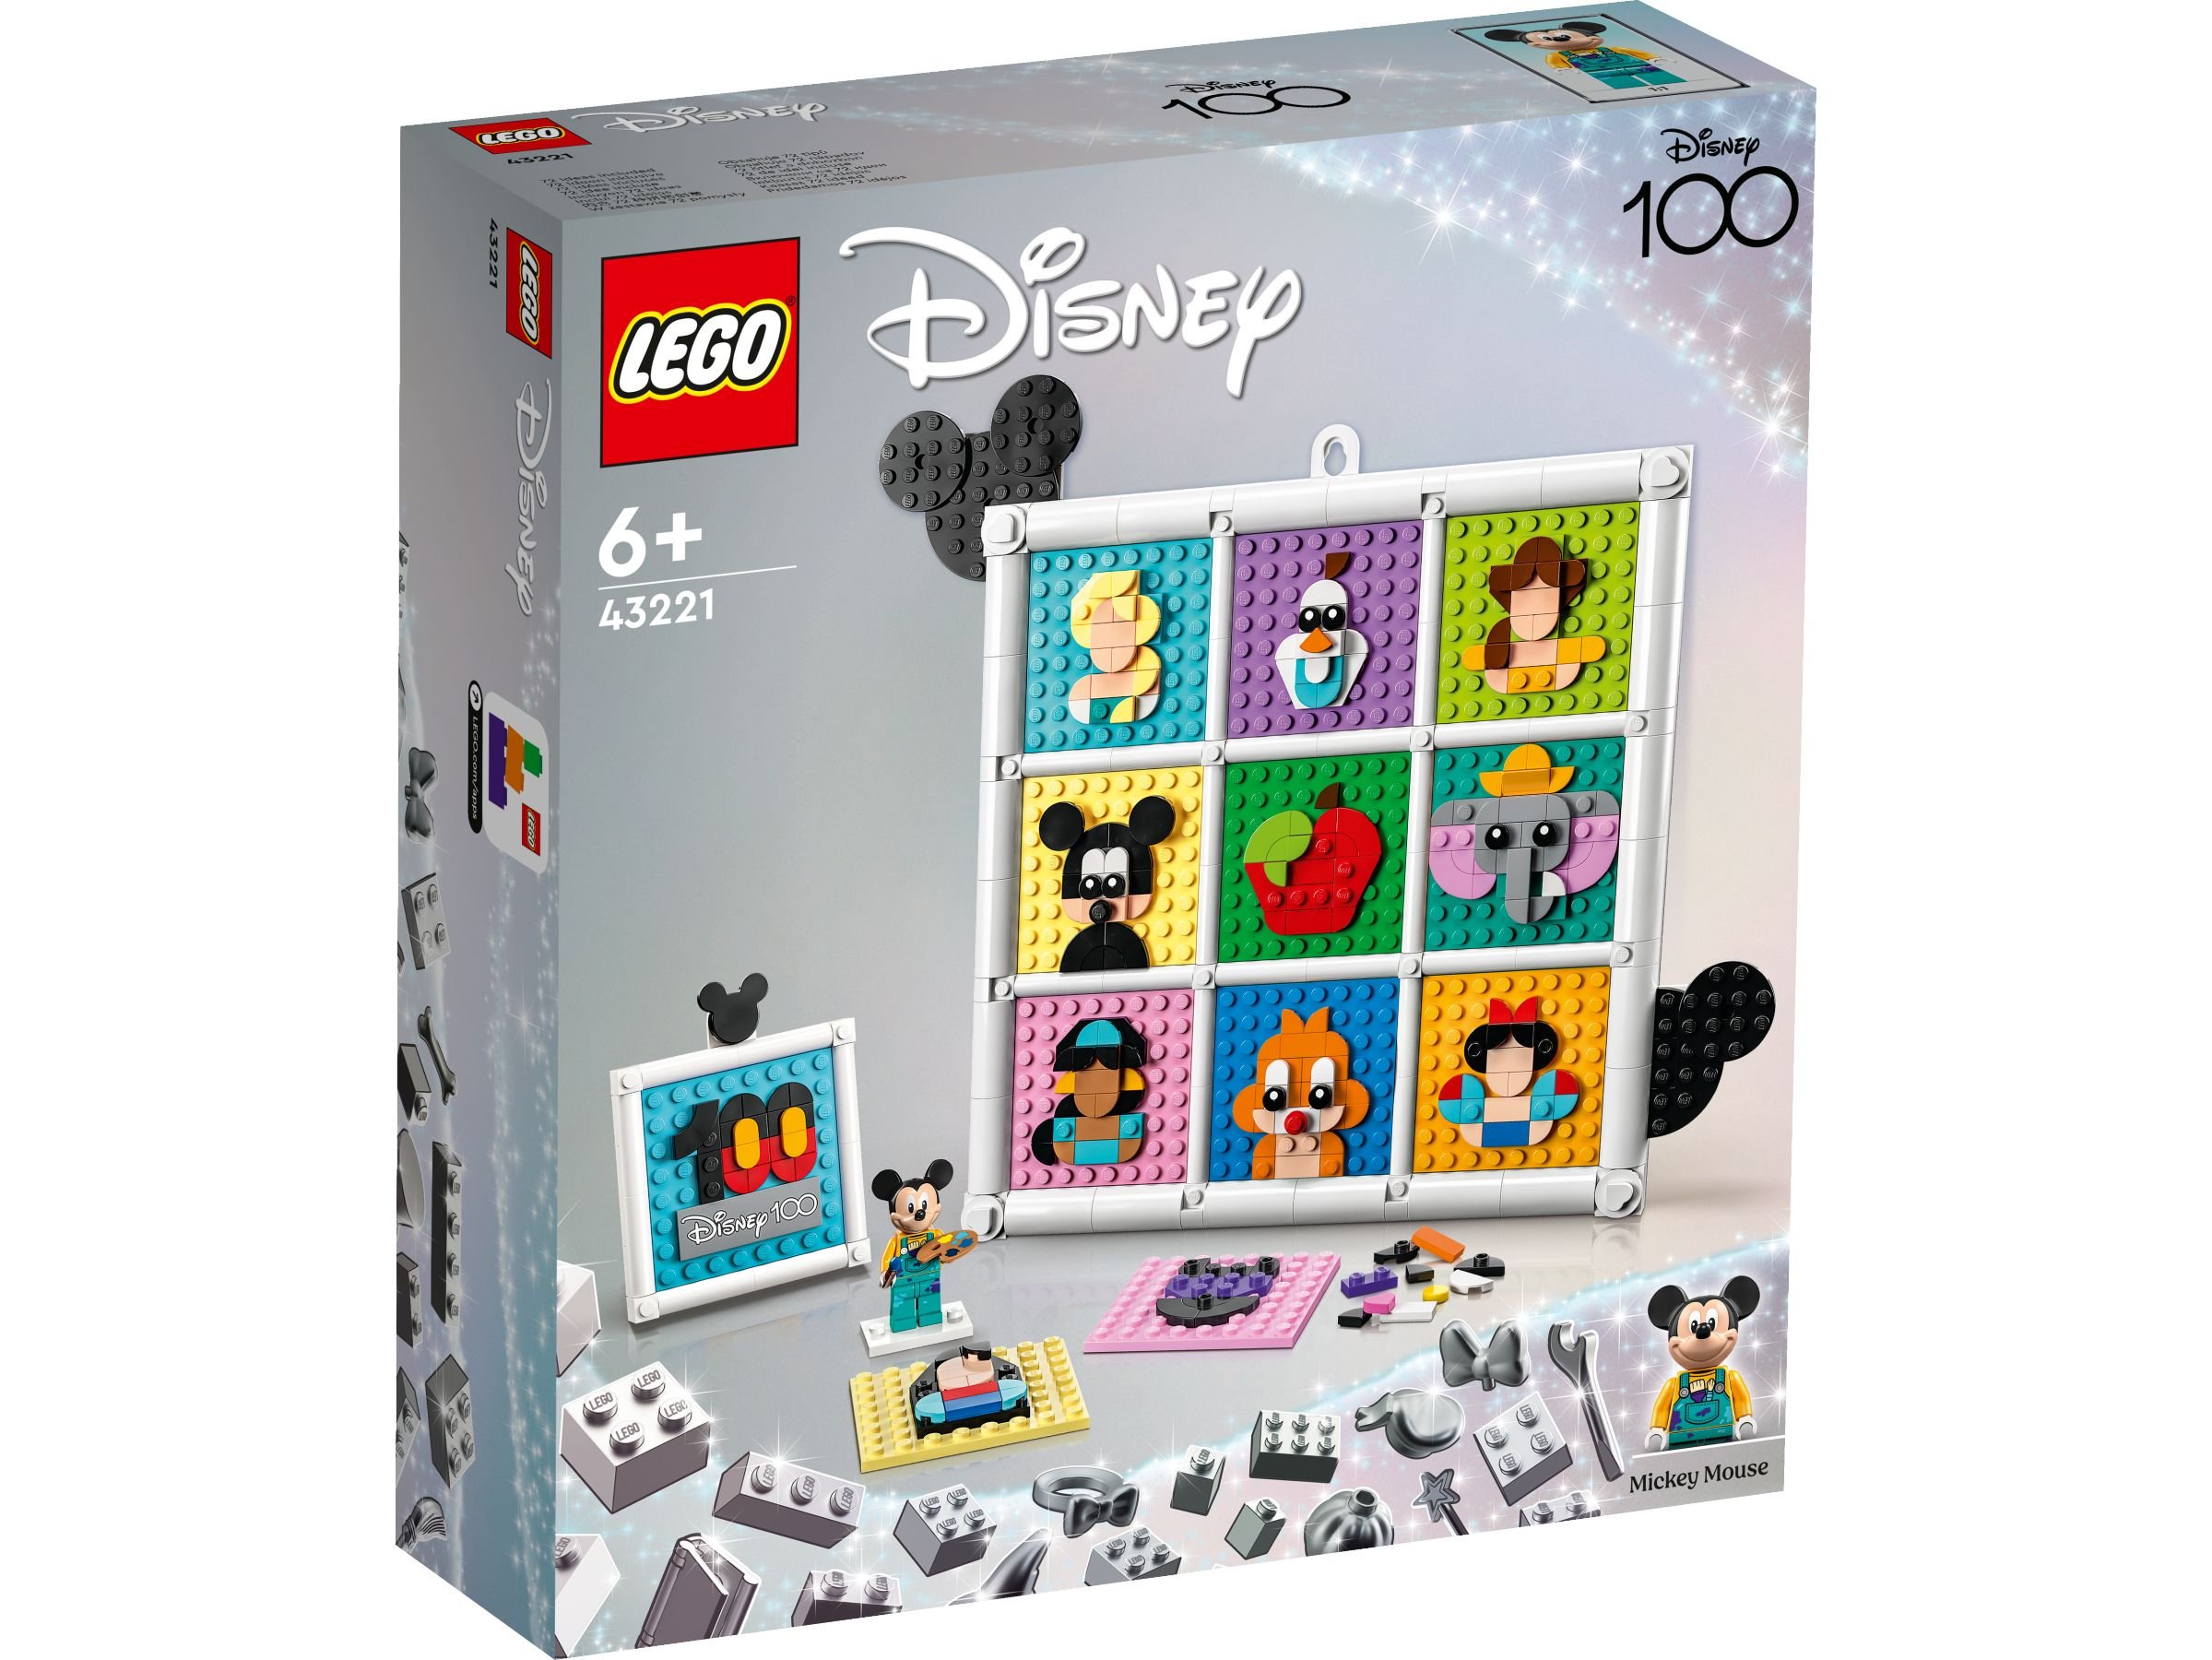 LEGO Disney 43221 100 Jahre Disney Zeichentrickikonen LEGO_43221_Box1_v29.jpg